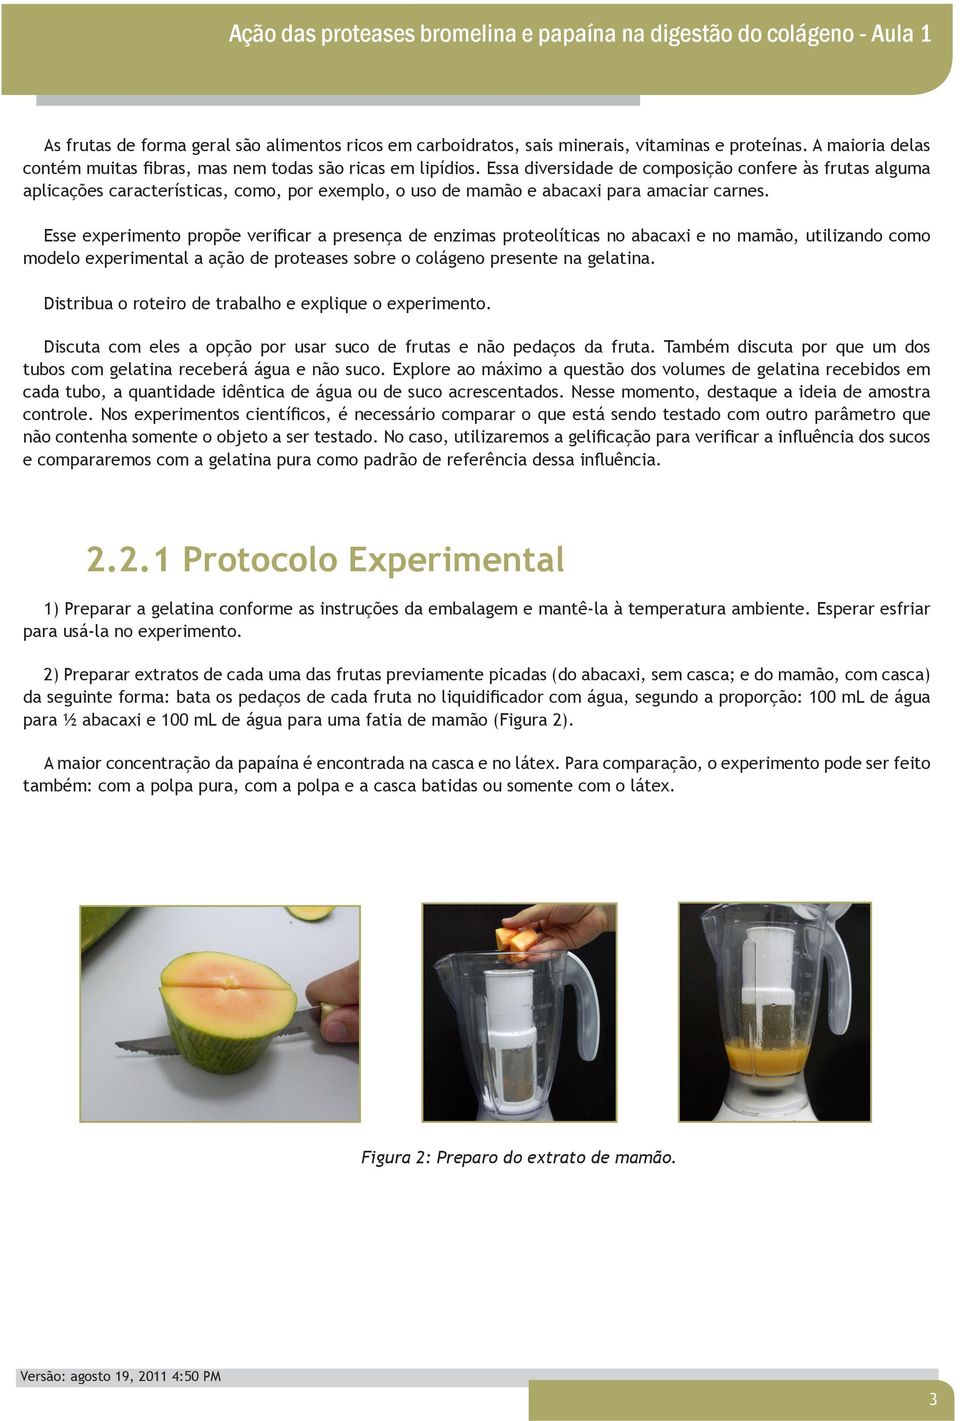 Esse experimento propõe verificar a presença de enzimas proteolíticas no abacaxi e no mamão, utilizando como modelo experimental a ação de proteases sobre o colágeno presente na gelatina.